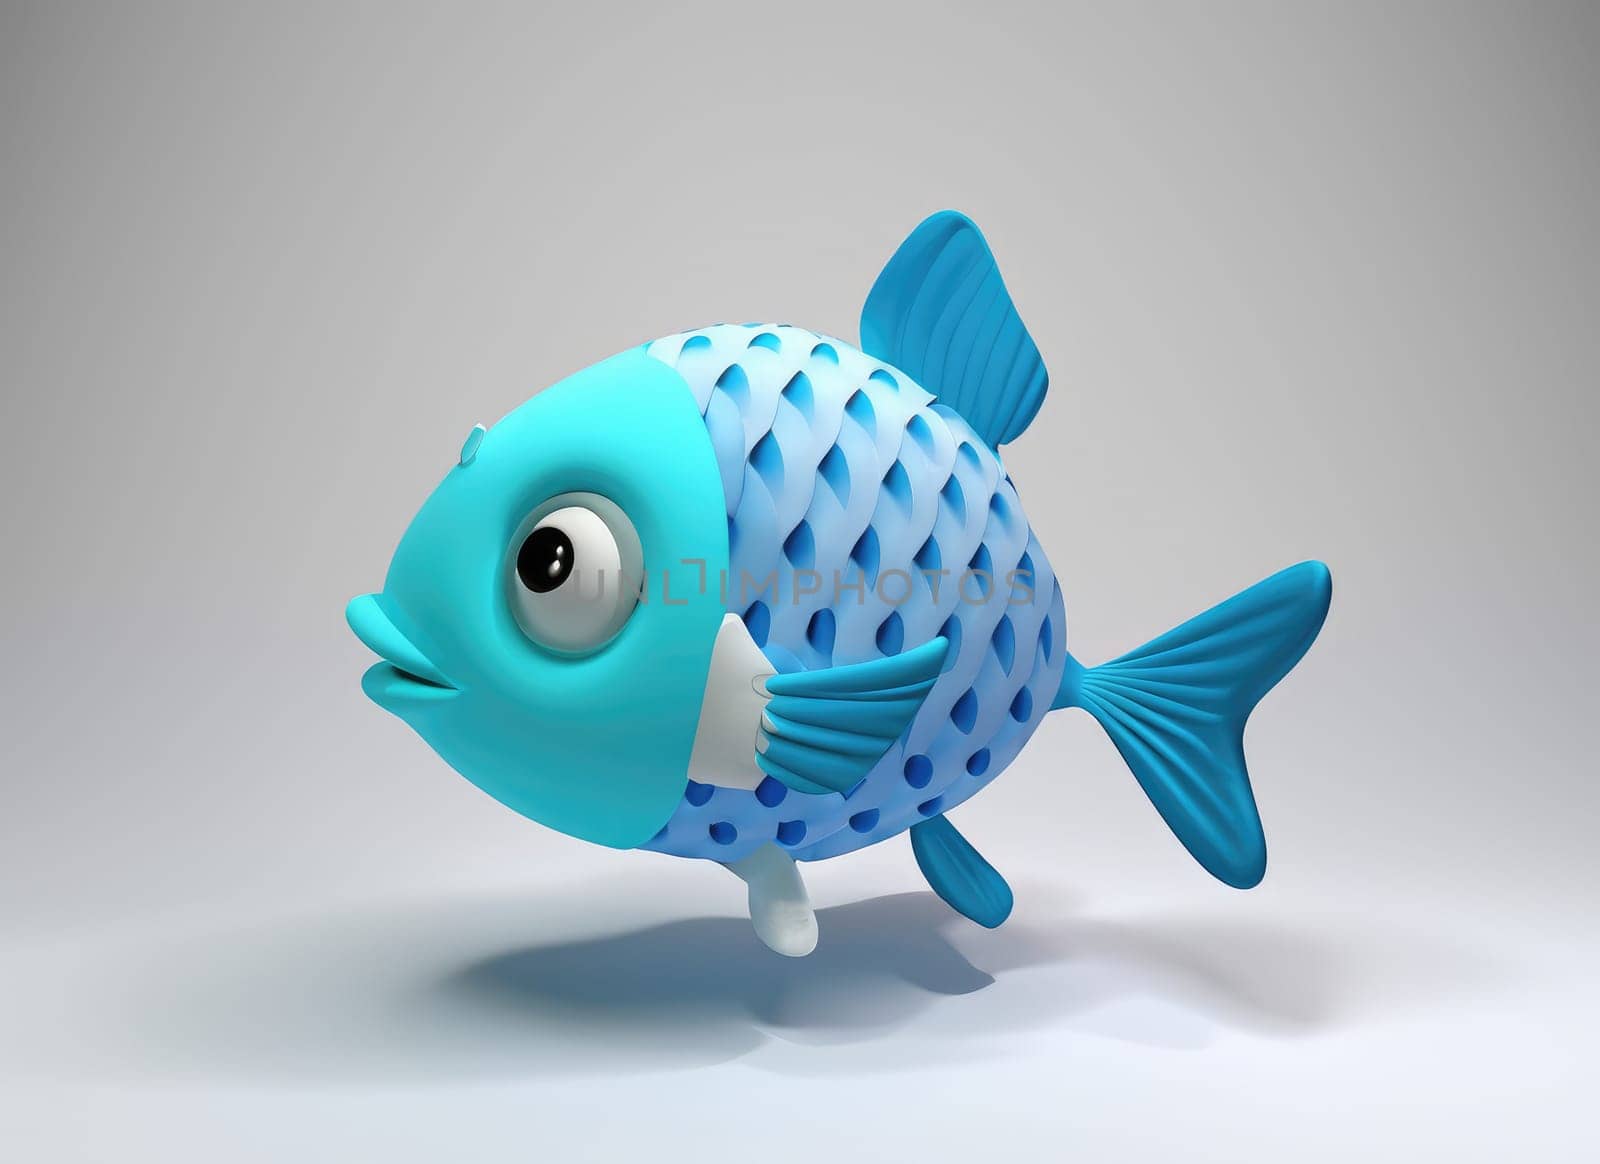 3D Cute cartoon Fish character. 